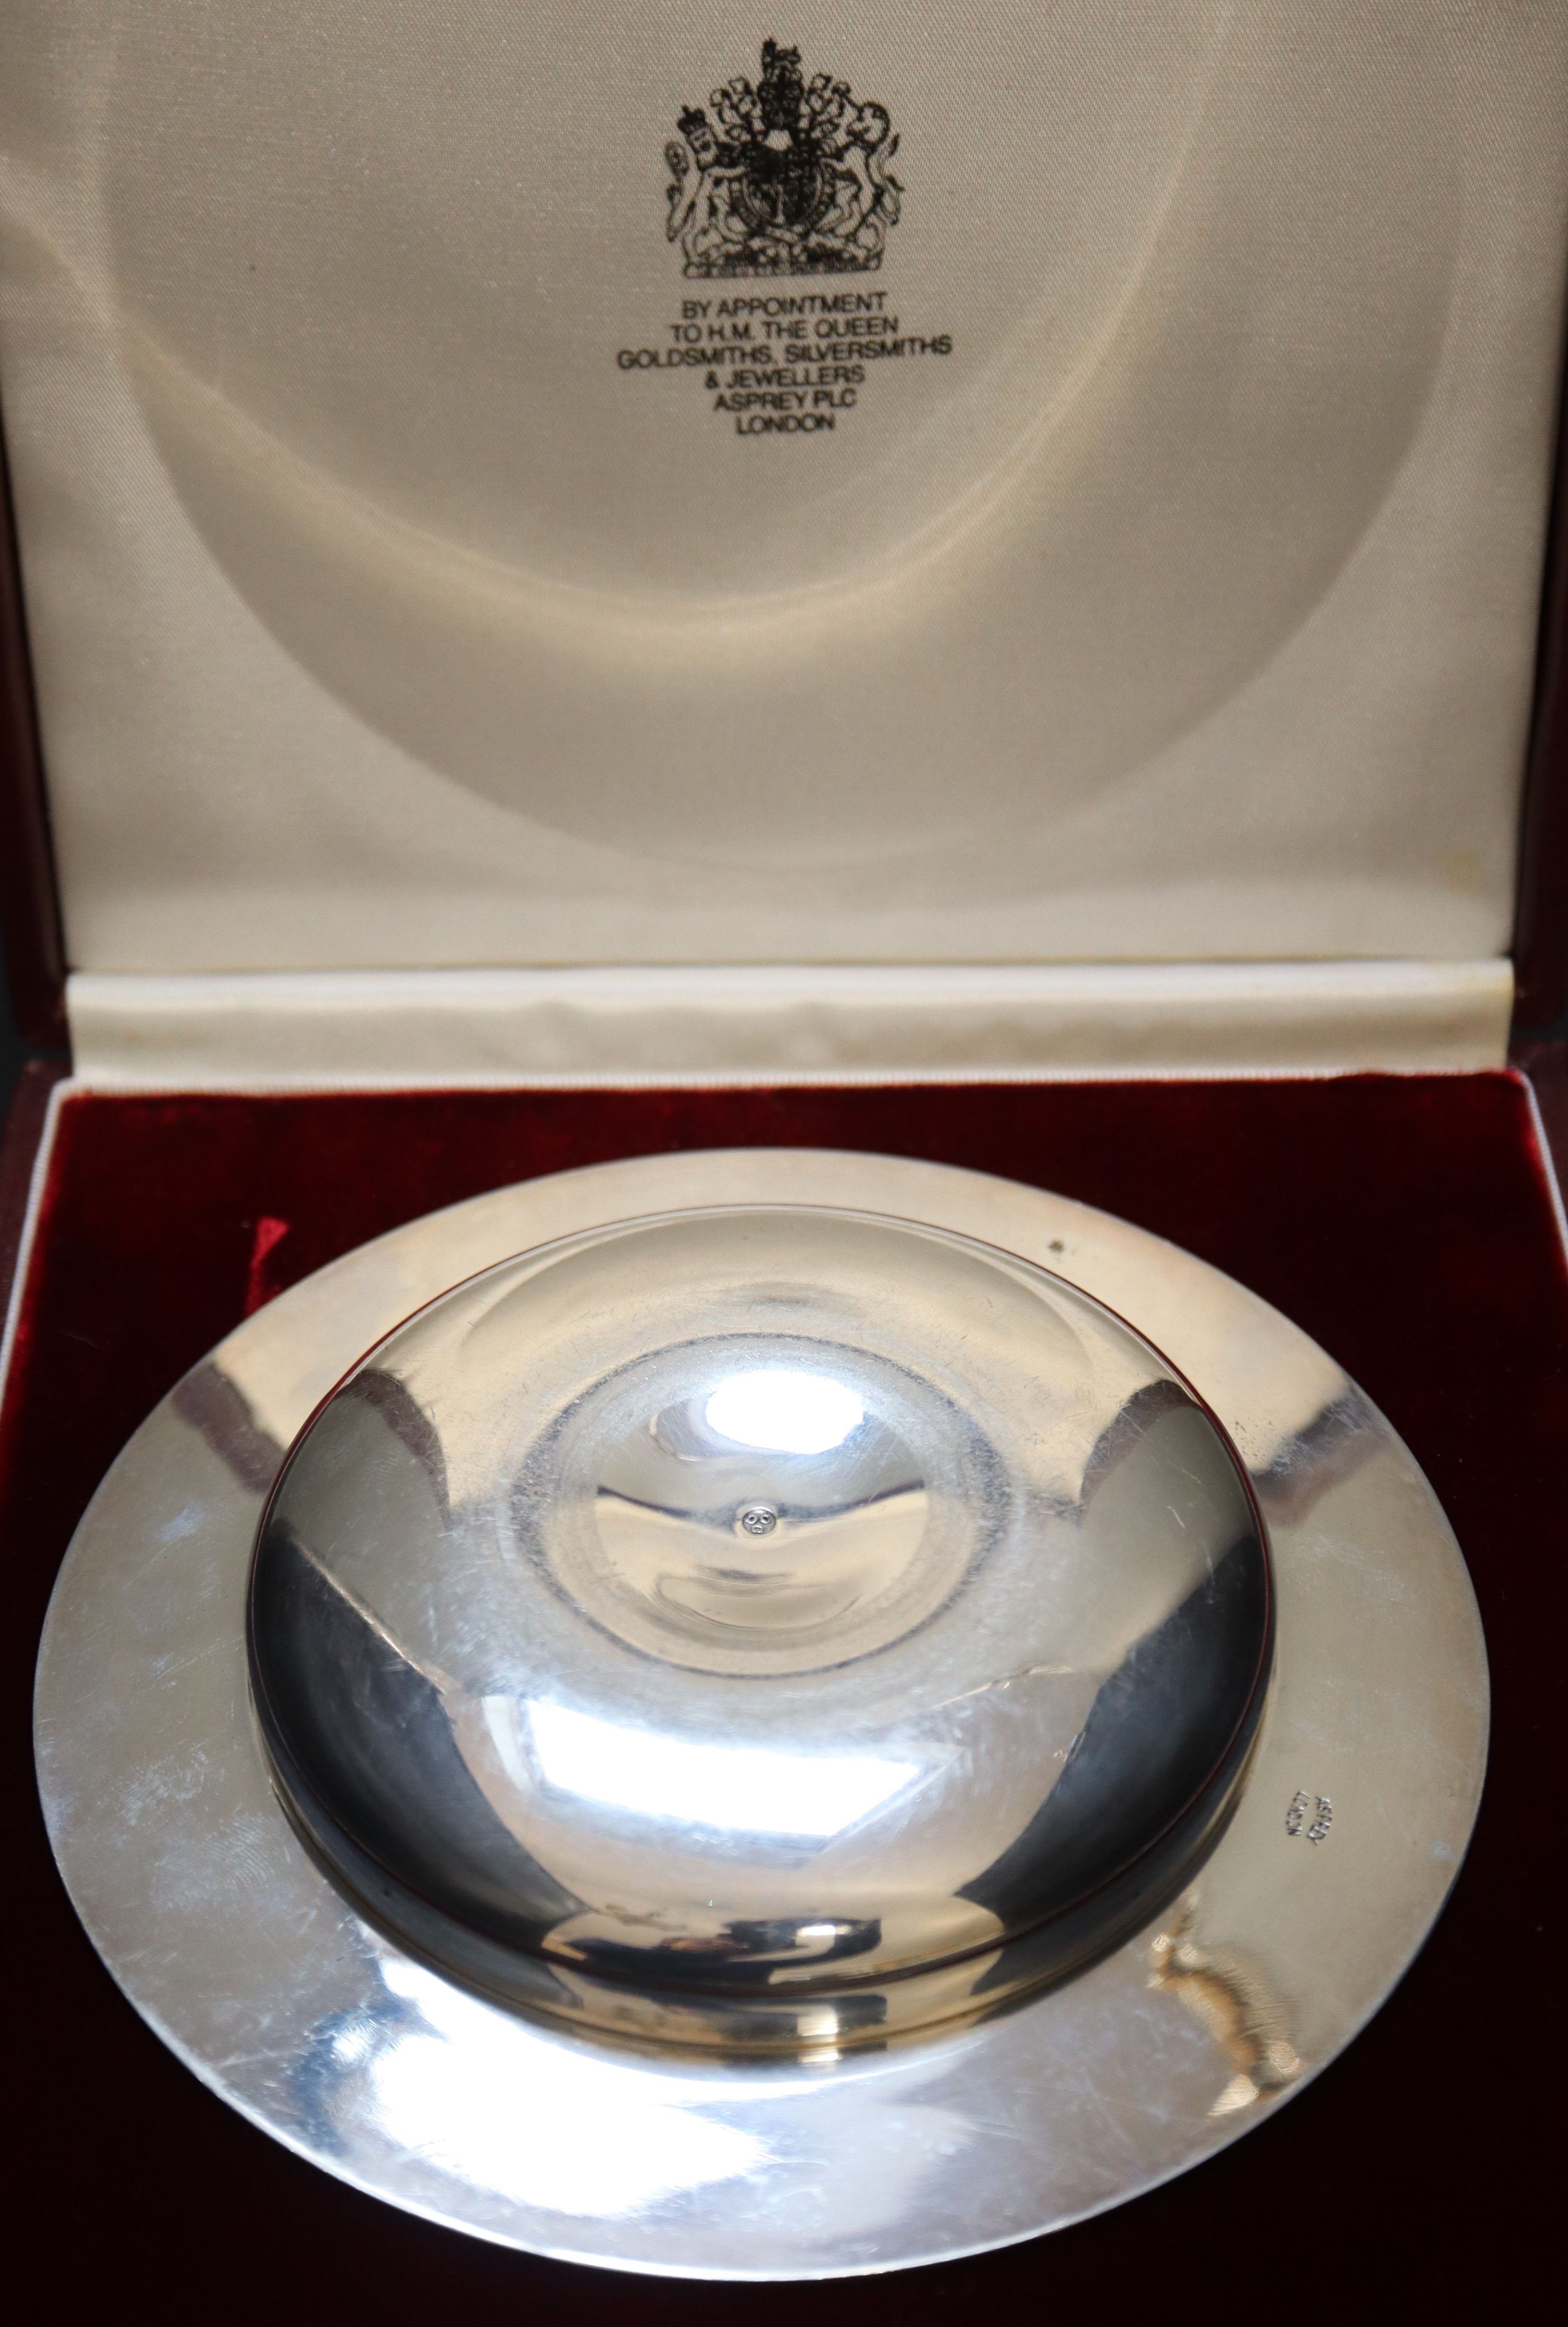 A cased modern silver Armada dish by Asprey & Co, 14.6cm, 5.5oz., in Asprey box.